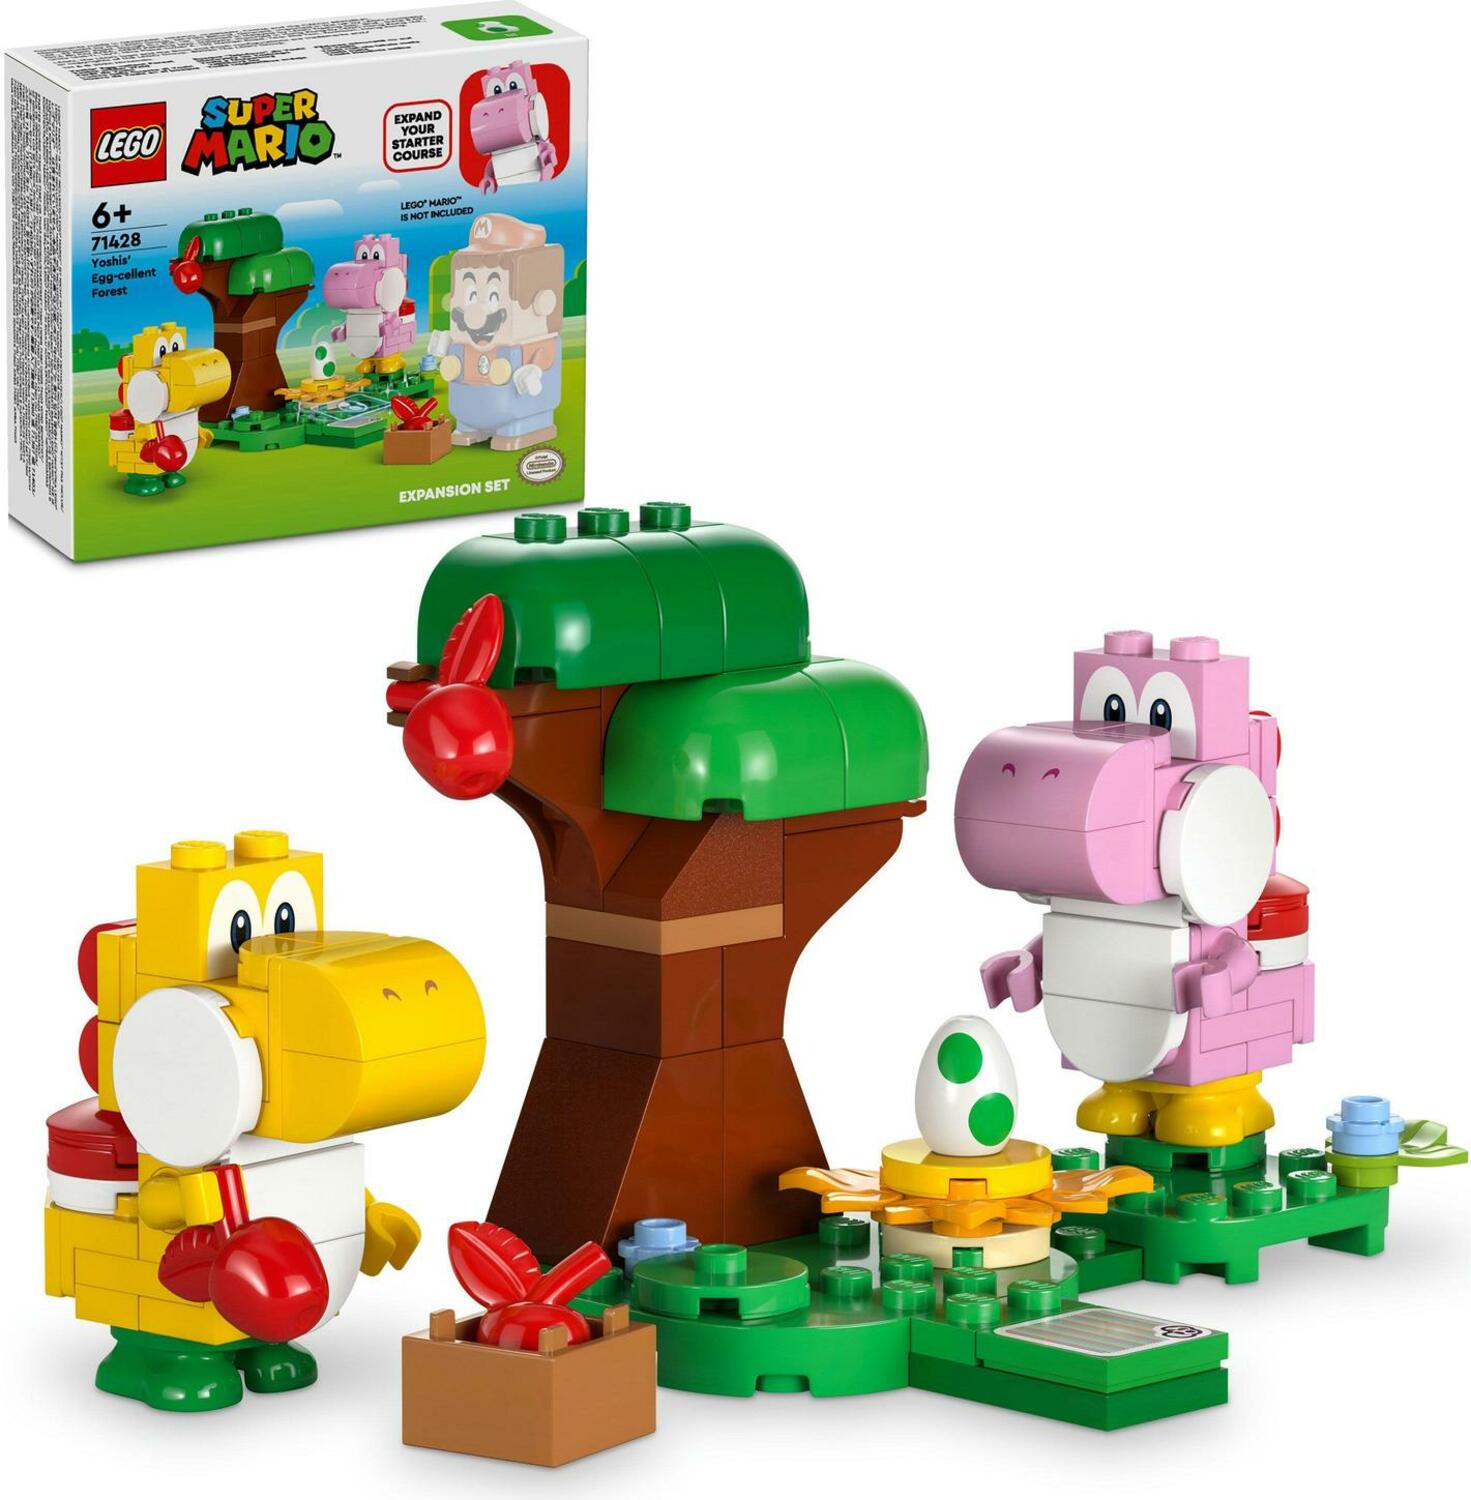 LEGO Super Mario 71360 Avventure di Mario - Starter Pack, Giochi per  Bambini dai 6 Anni, Giocattolo Personaggi Interattivi